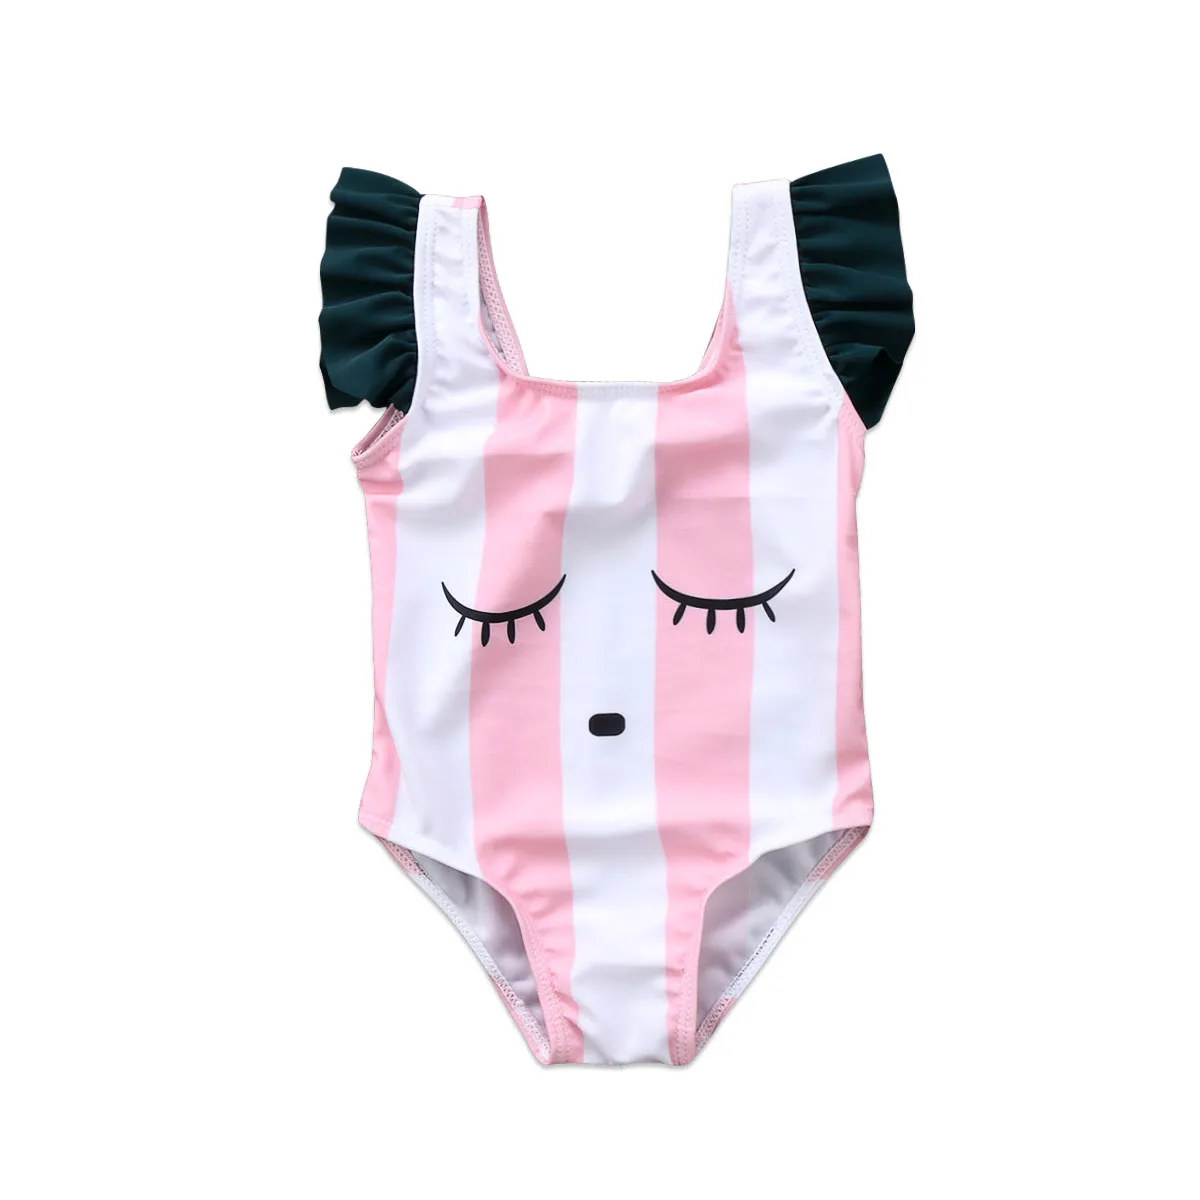 Милый купальник в розовую полоску с оборками для новорожденных и маленьких девочек, купальный костюм, купальный костюм